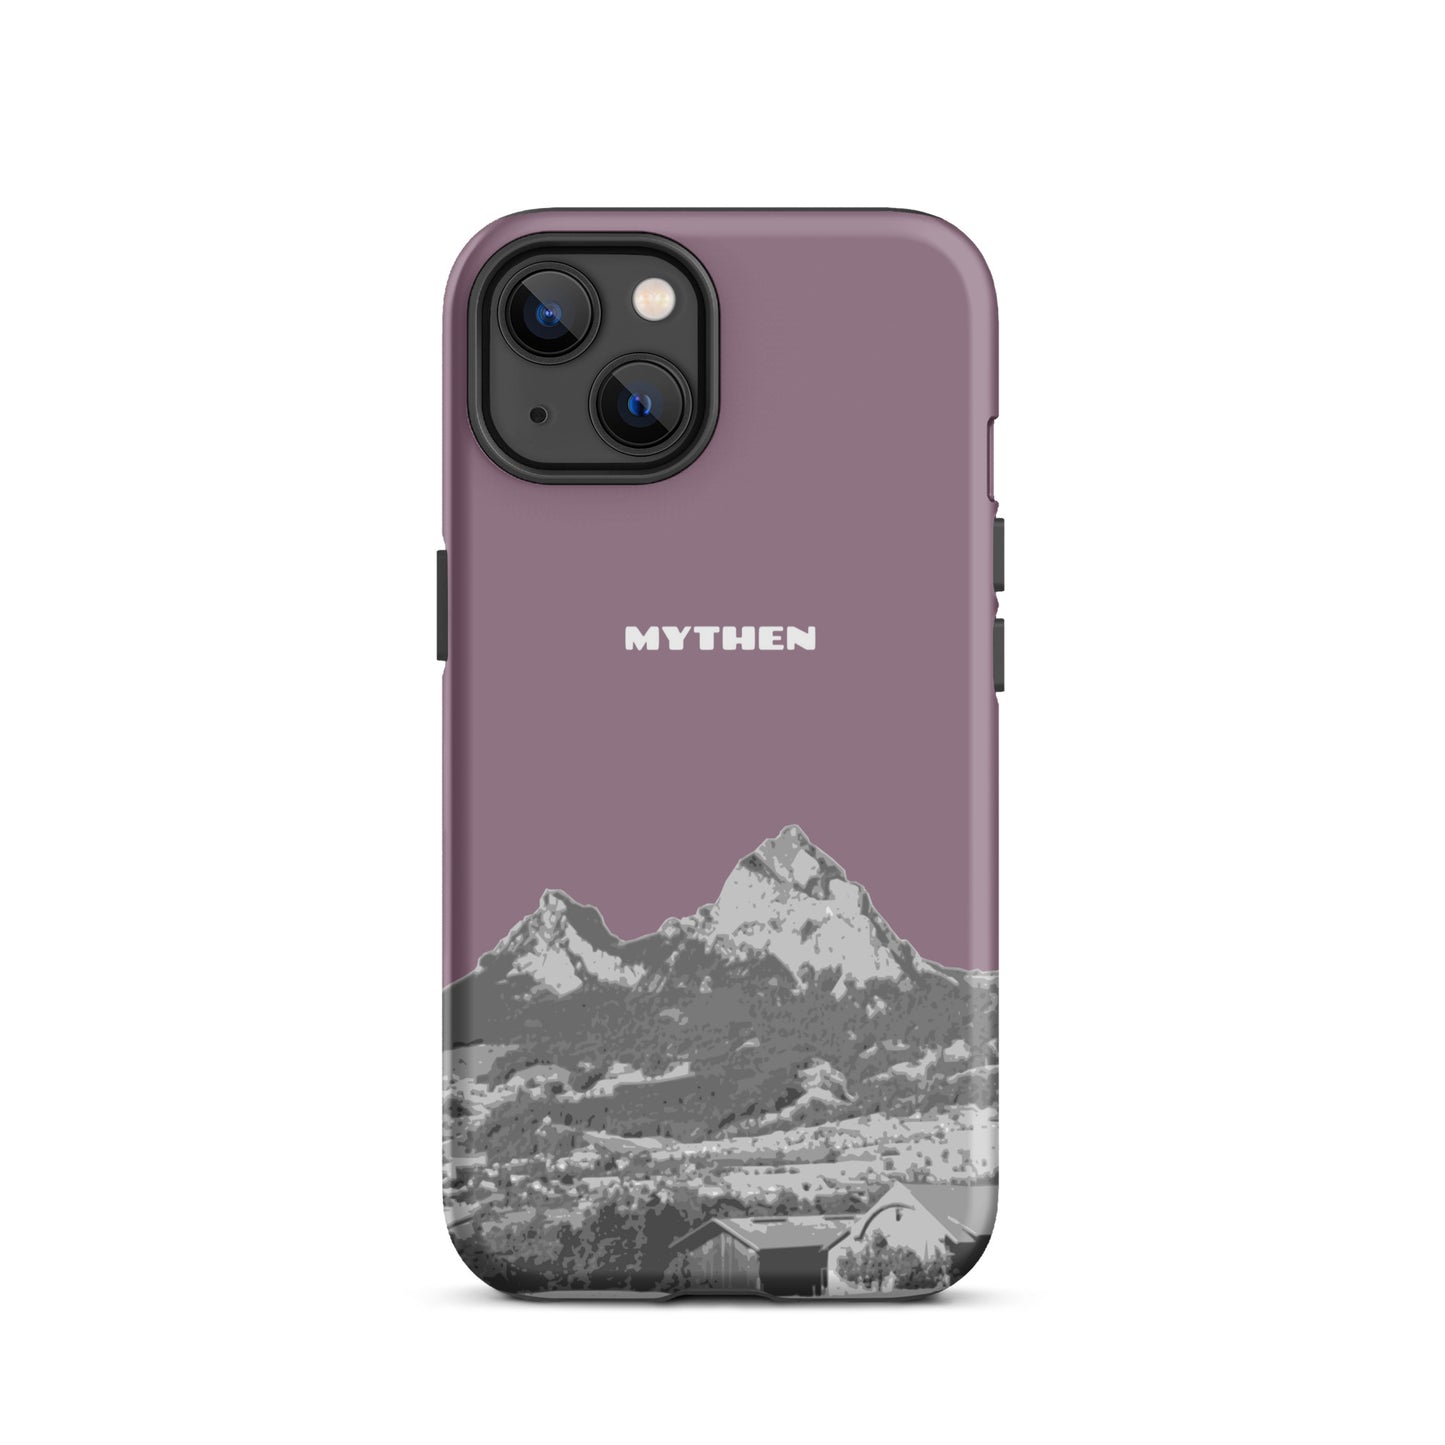 Hülle für das iPhone 13 von Apple in der Farbe Pastellviolett, die den Grossen Mythen und den Kleinen Mythen bei Schwyz zeigt. 